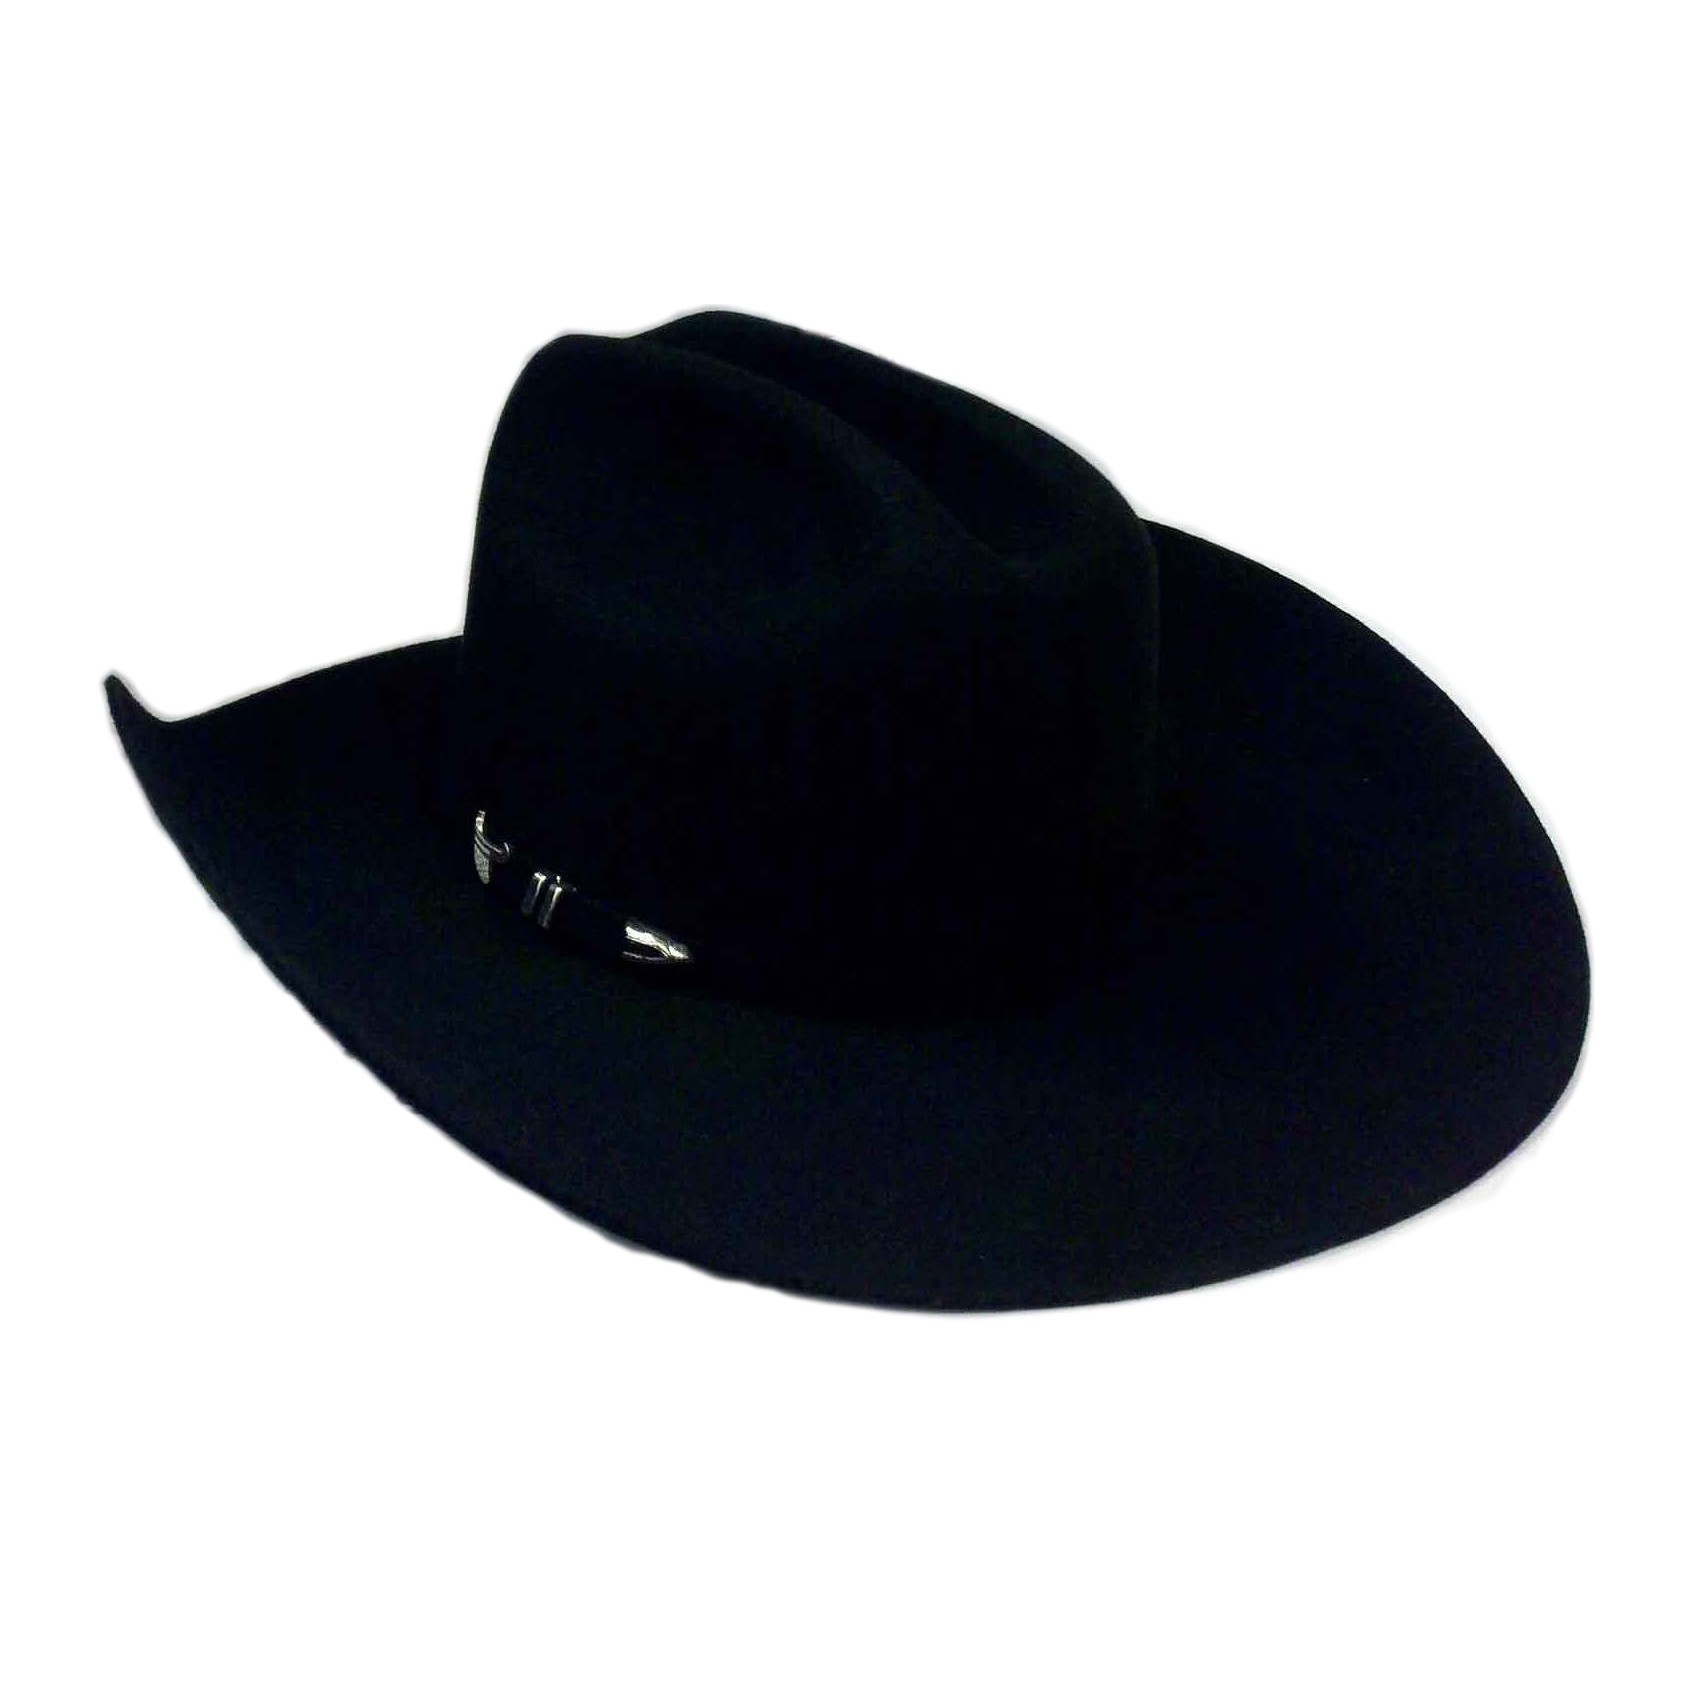 cowboy hat clipart images - photo #49